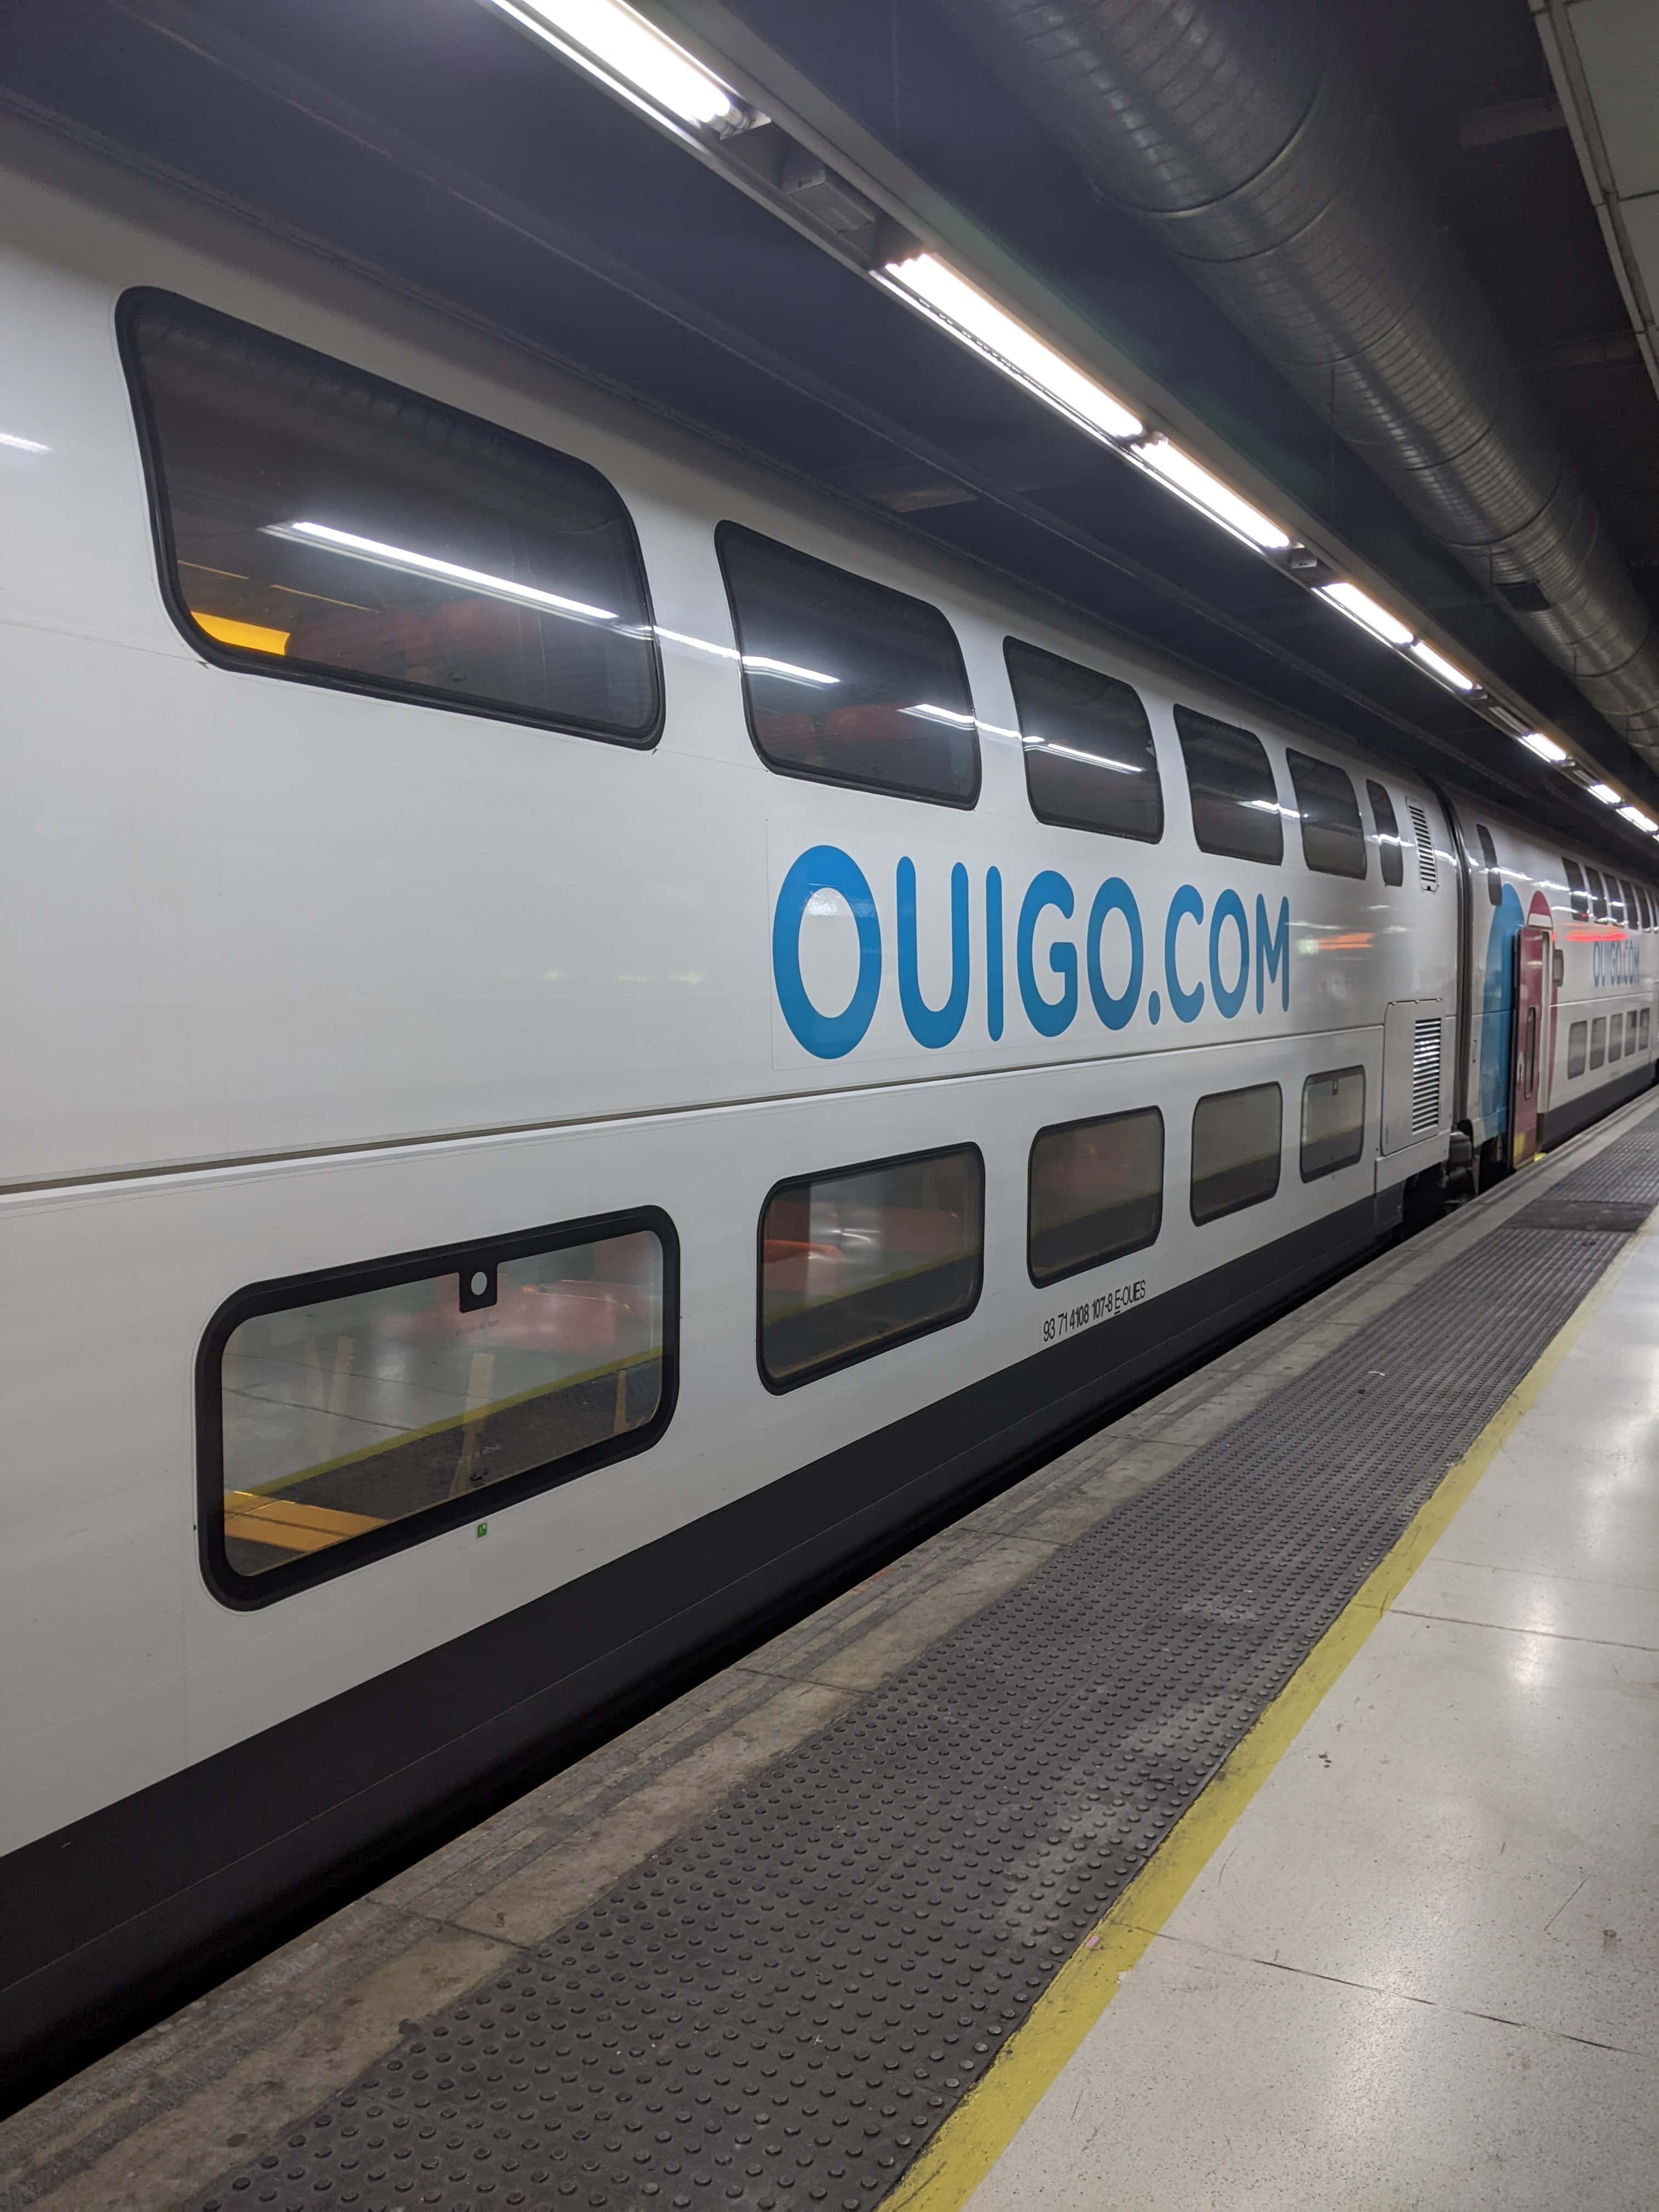 Side of a OUIGO train in Spain